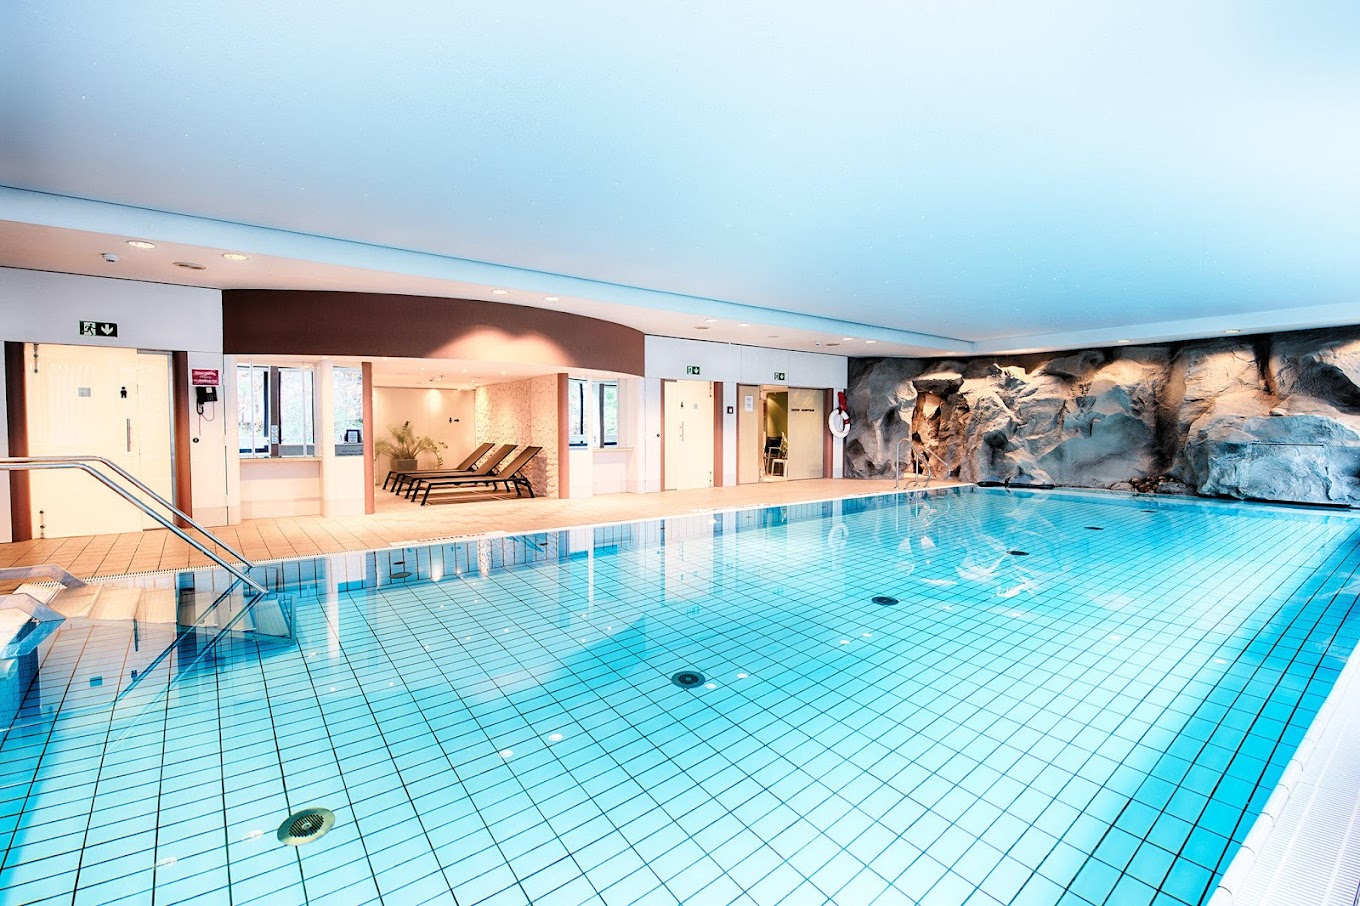 Kapalı havuz, sauna, buhar banyosu, güneşlenme terası ve kapsamlı fitness içeren modern spa, Frankfurt'a yapacağınız iş gezisi sırasında doğru rahatlamayı sunar.